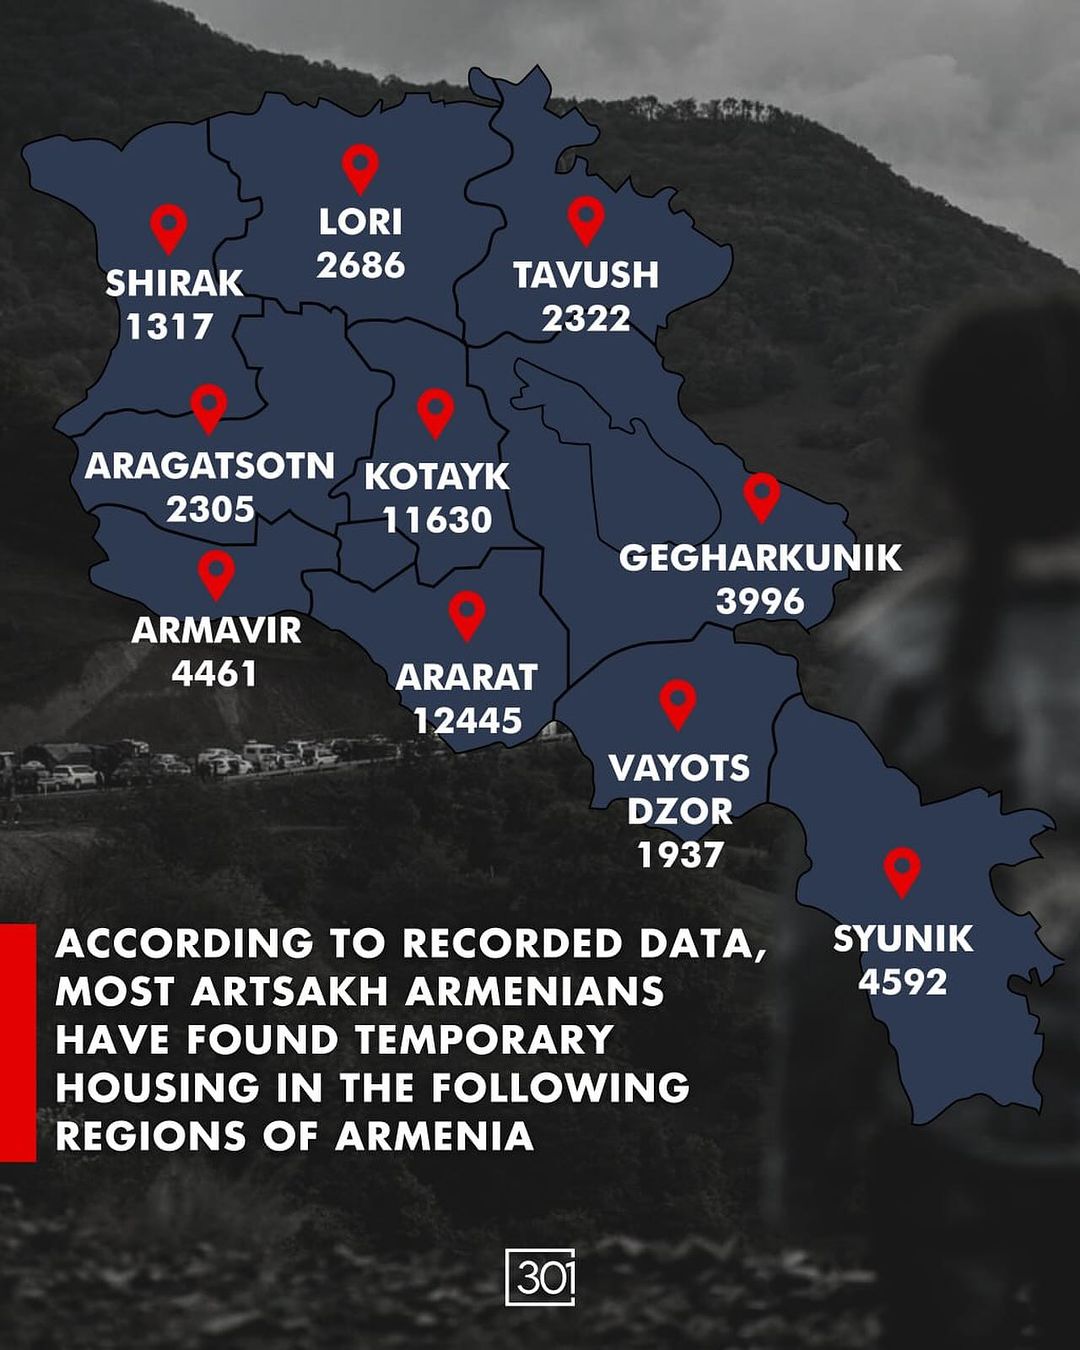 Πώς διασκορπίστηκε το 50% των προσφύγων του Αρτσάχ στην Αρμενία;